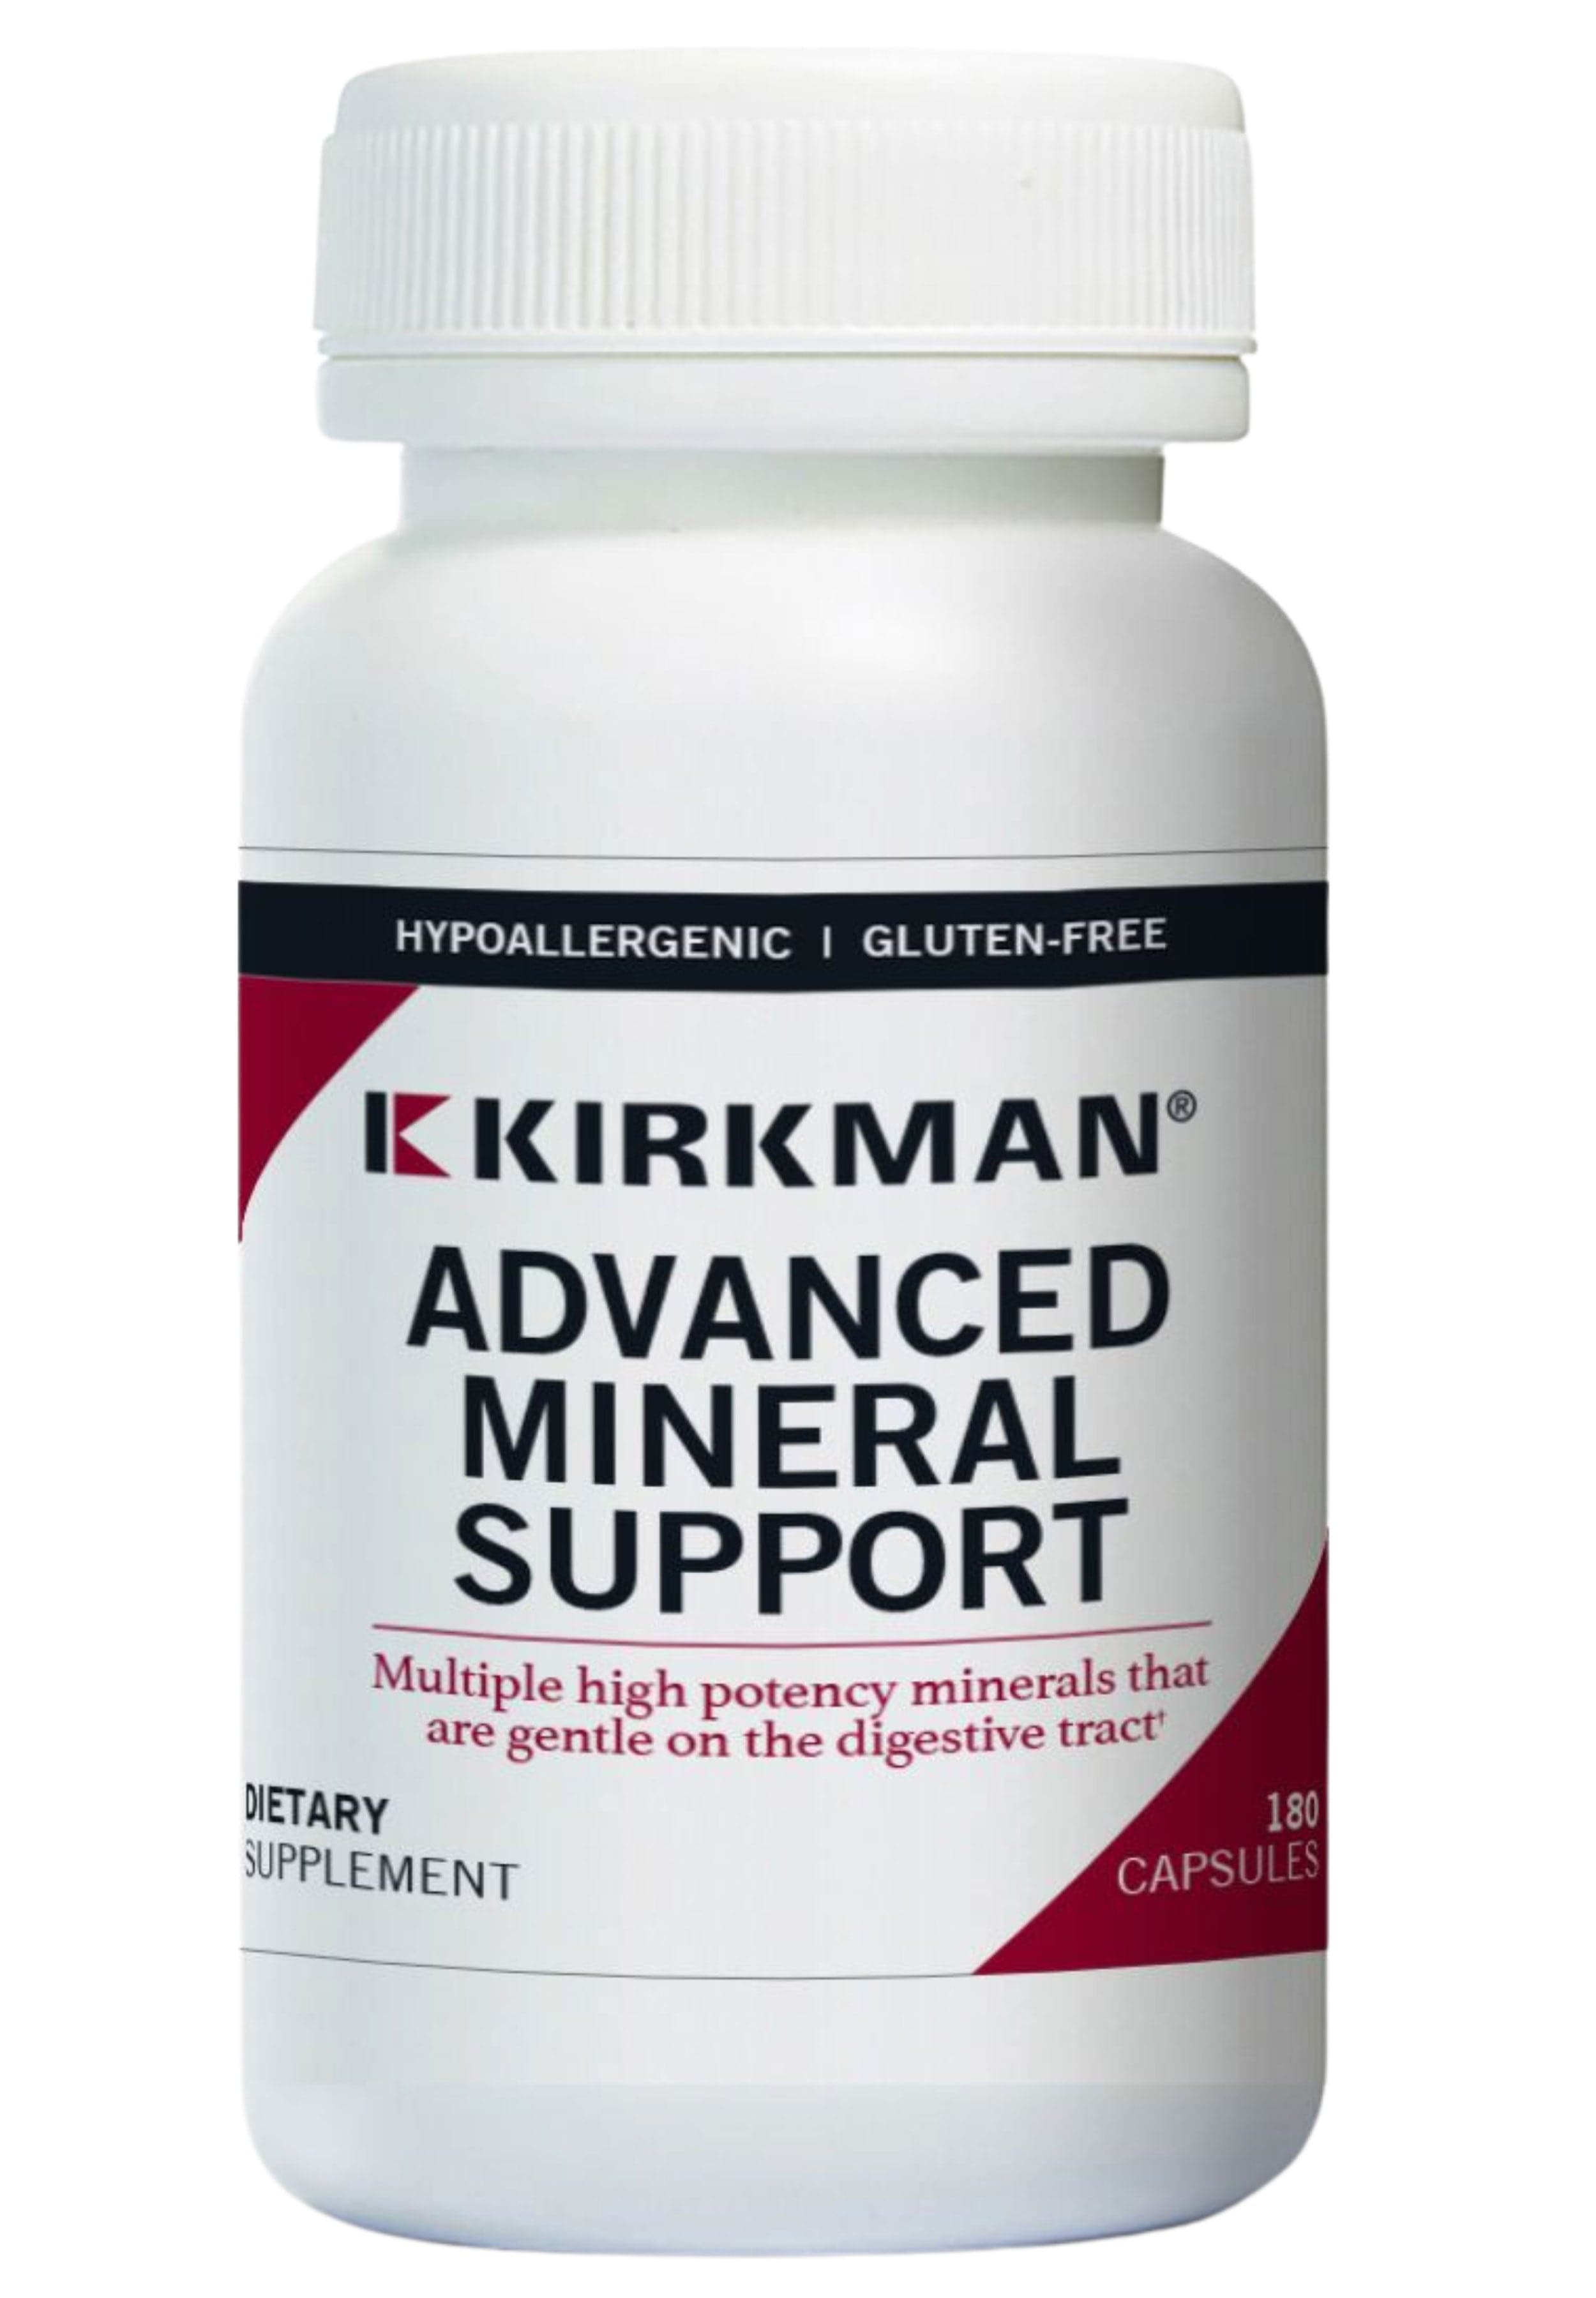 Kirkman Advanced Mineral Support